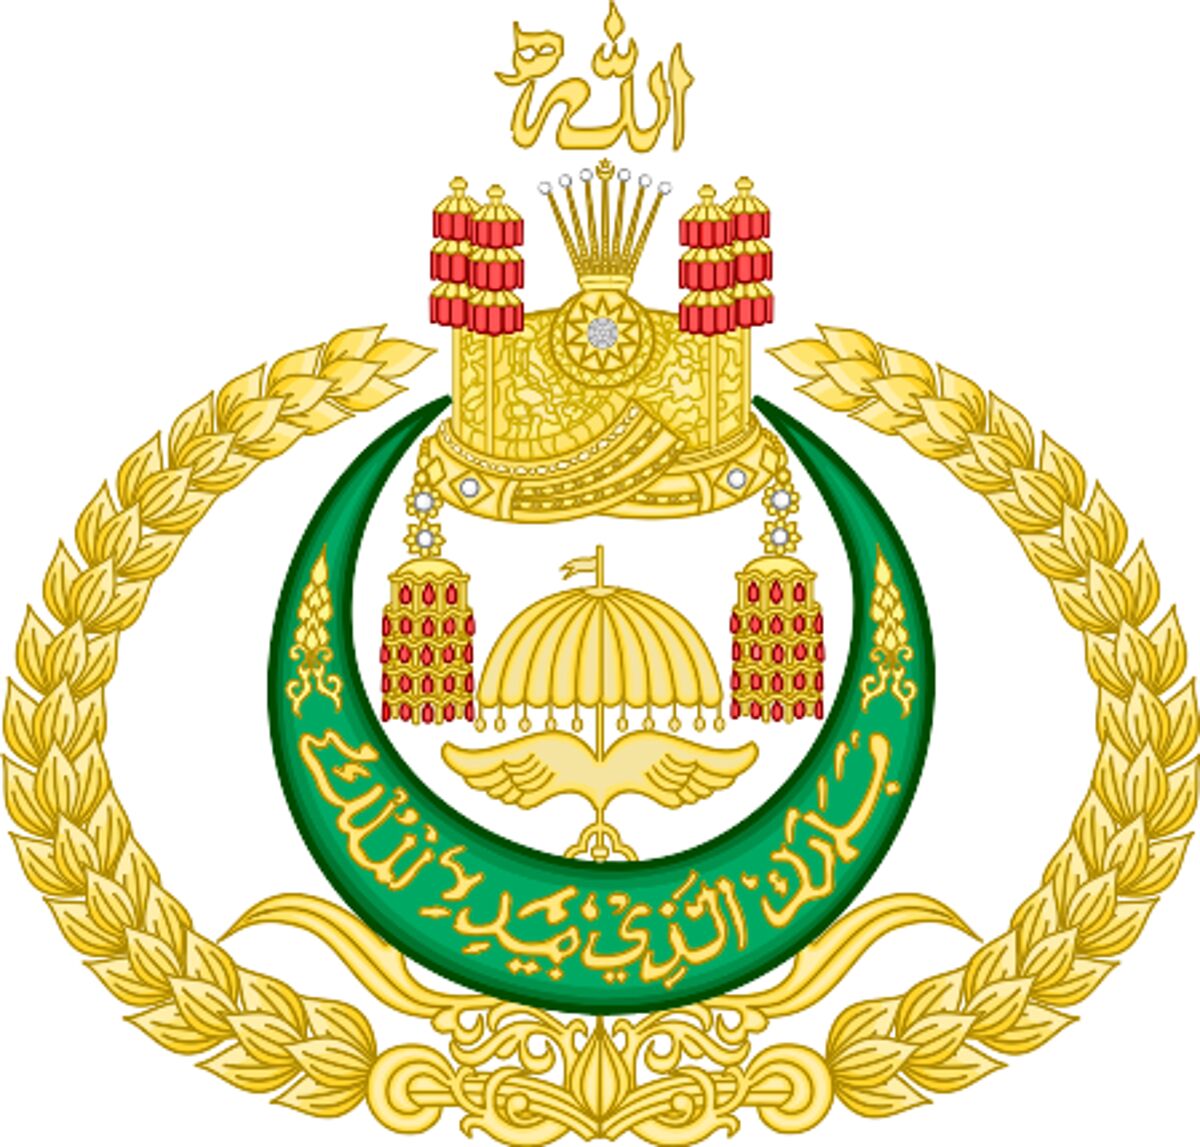 Sultan of Brunei - Famous Politician